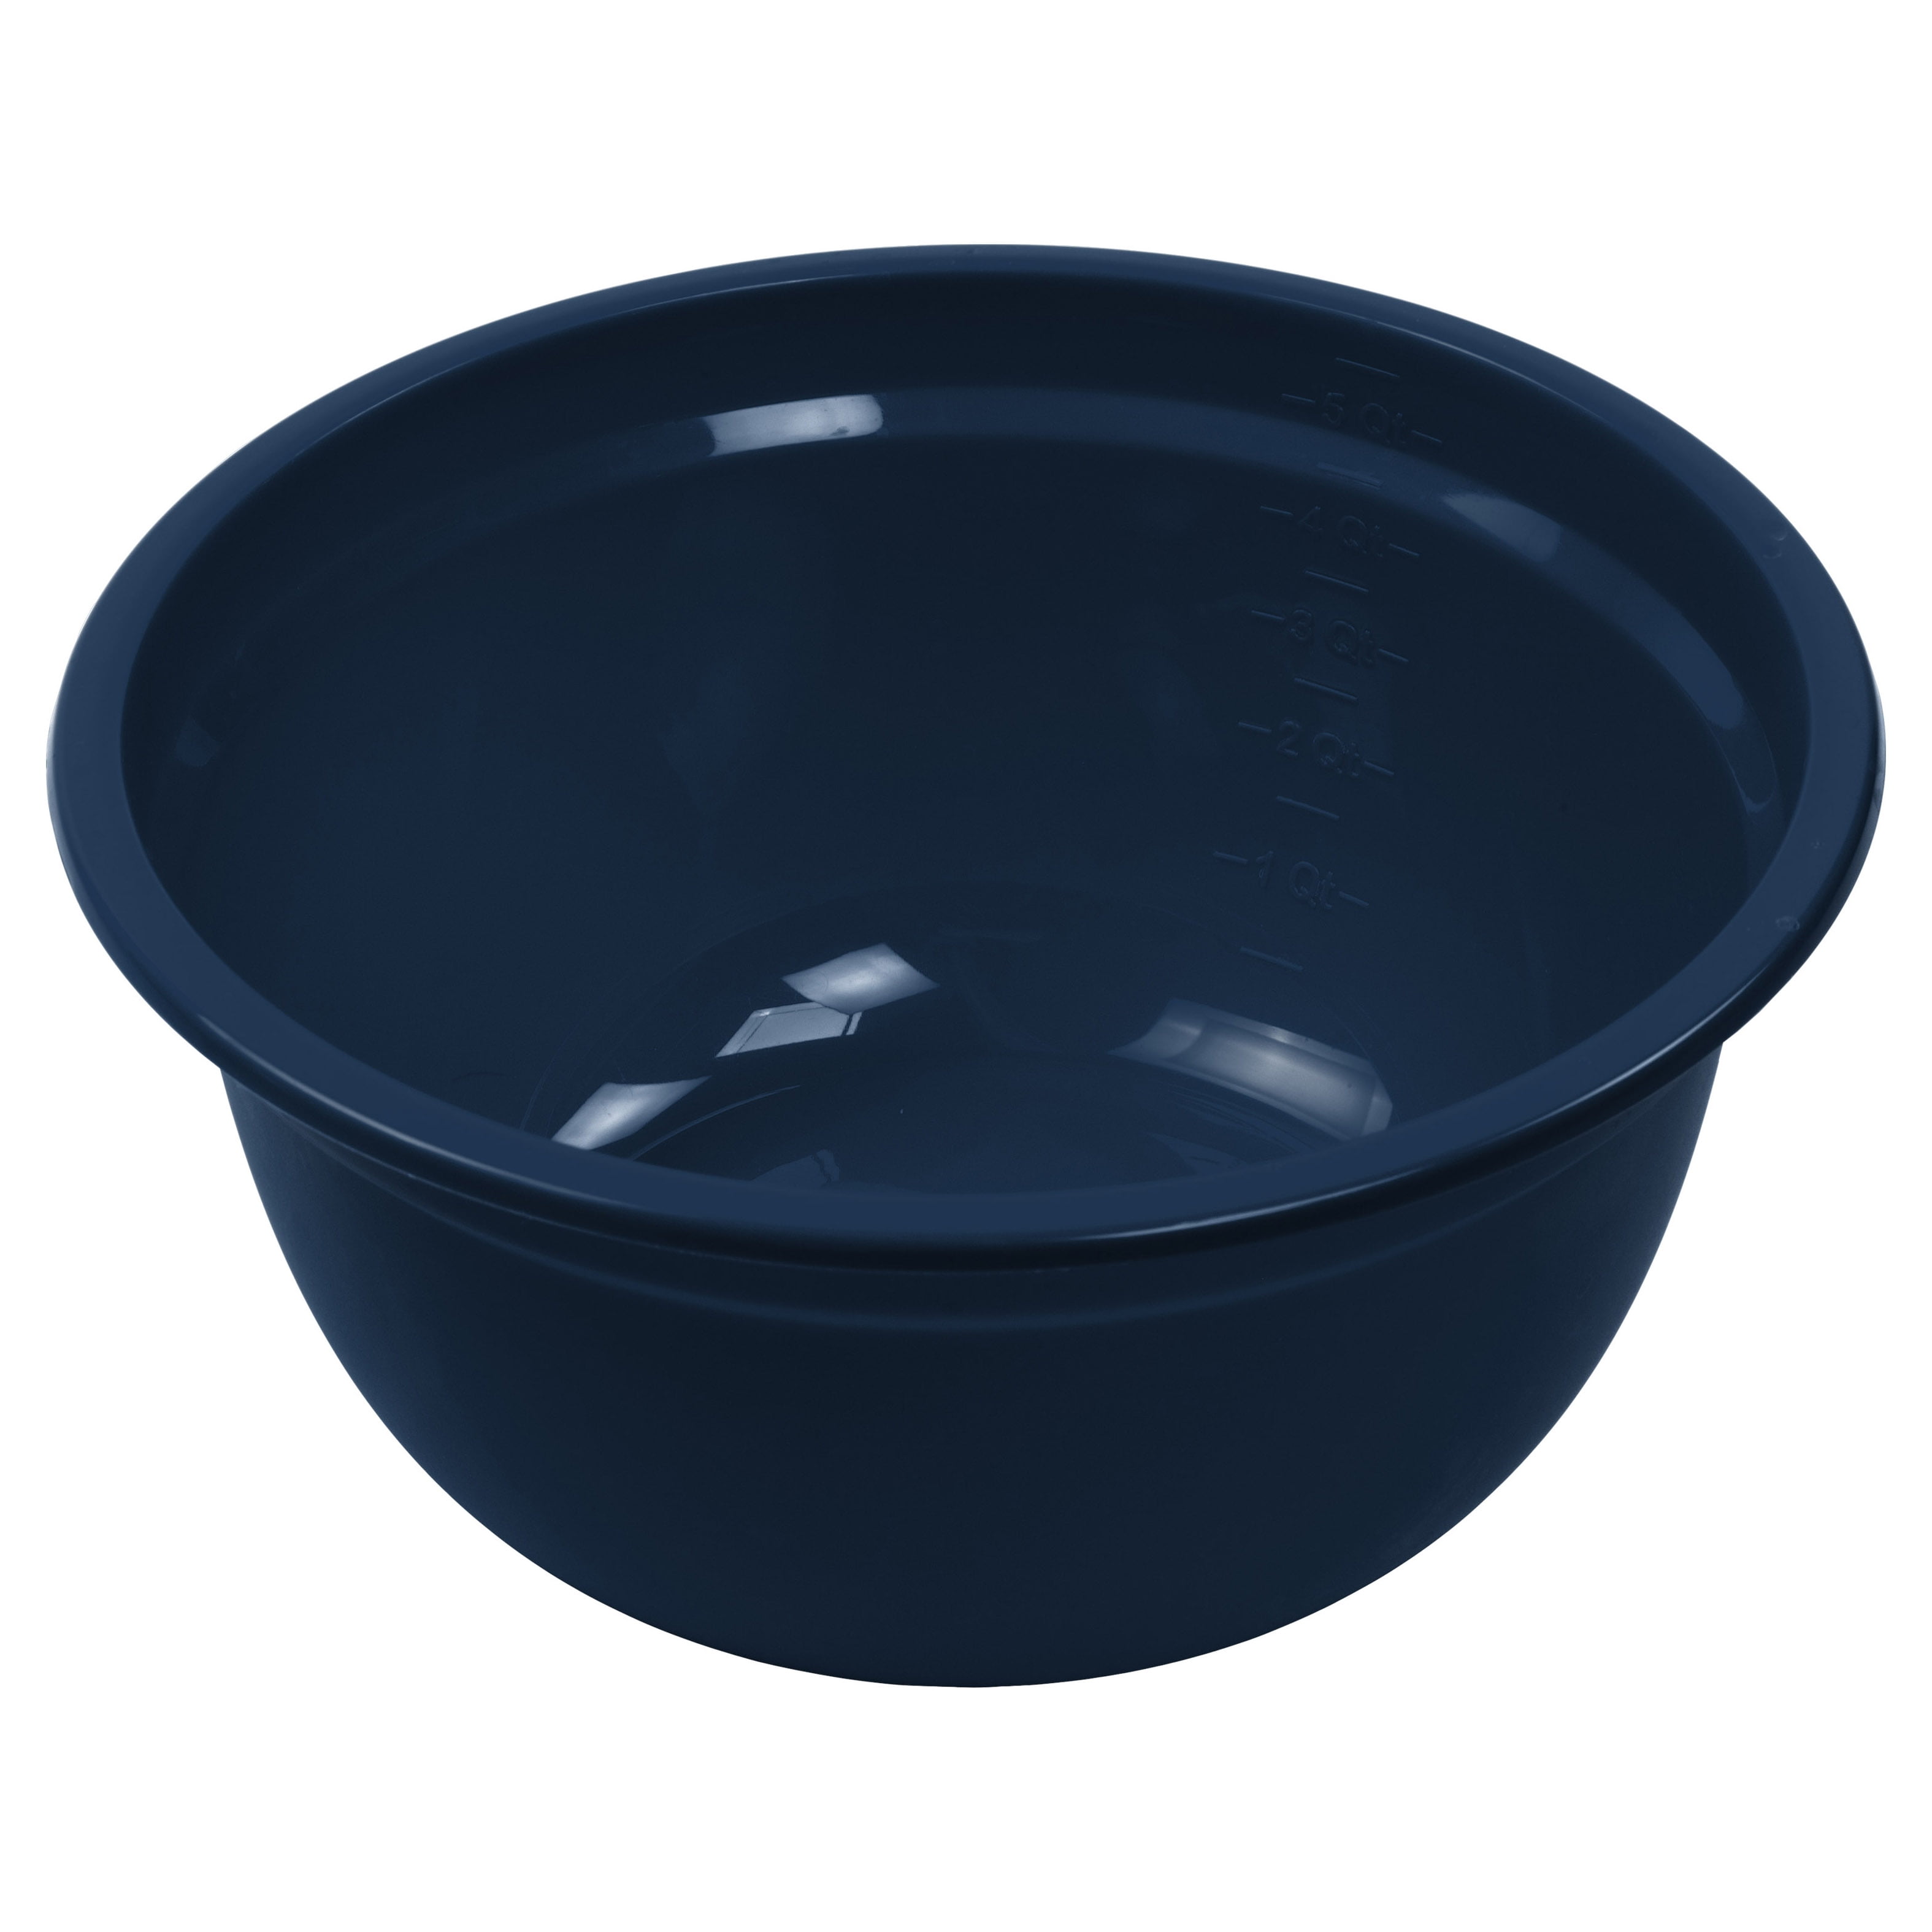 EXTRA LARGE Mixing Bowl (13-Inch) 6-Quart Plastic Salad Bowl/Mixing Bowls/Servin